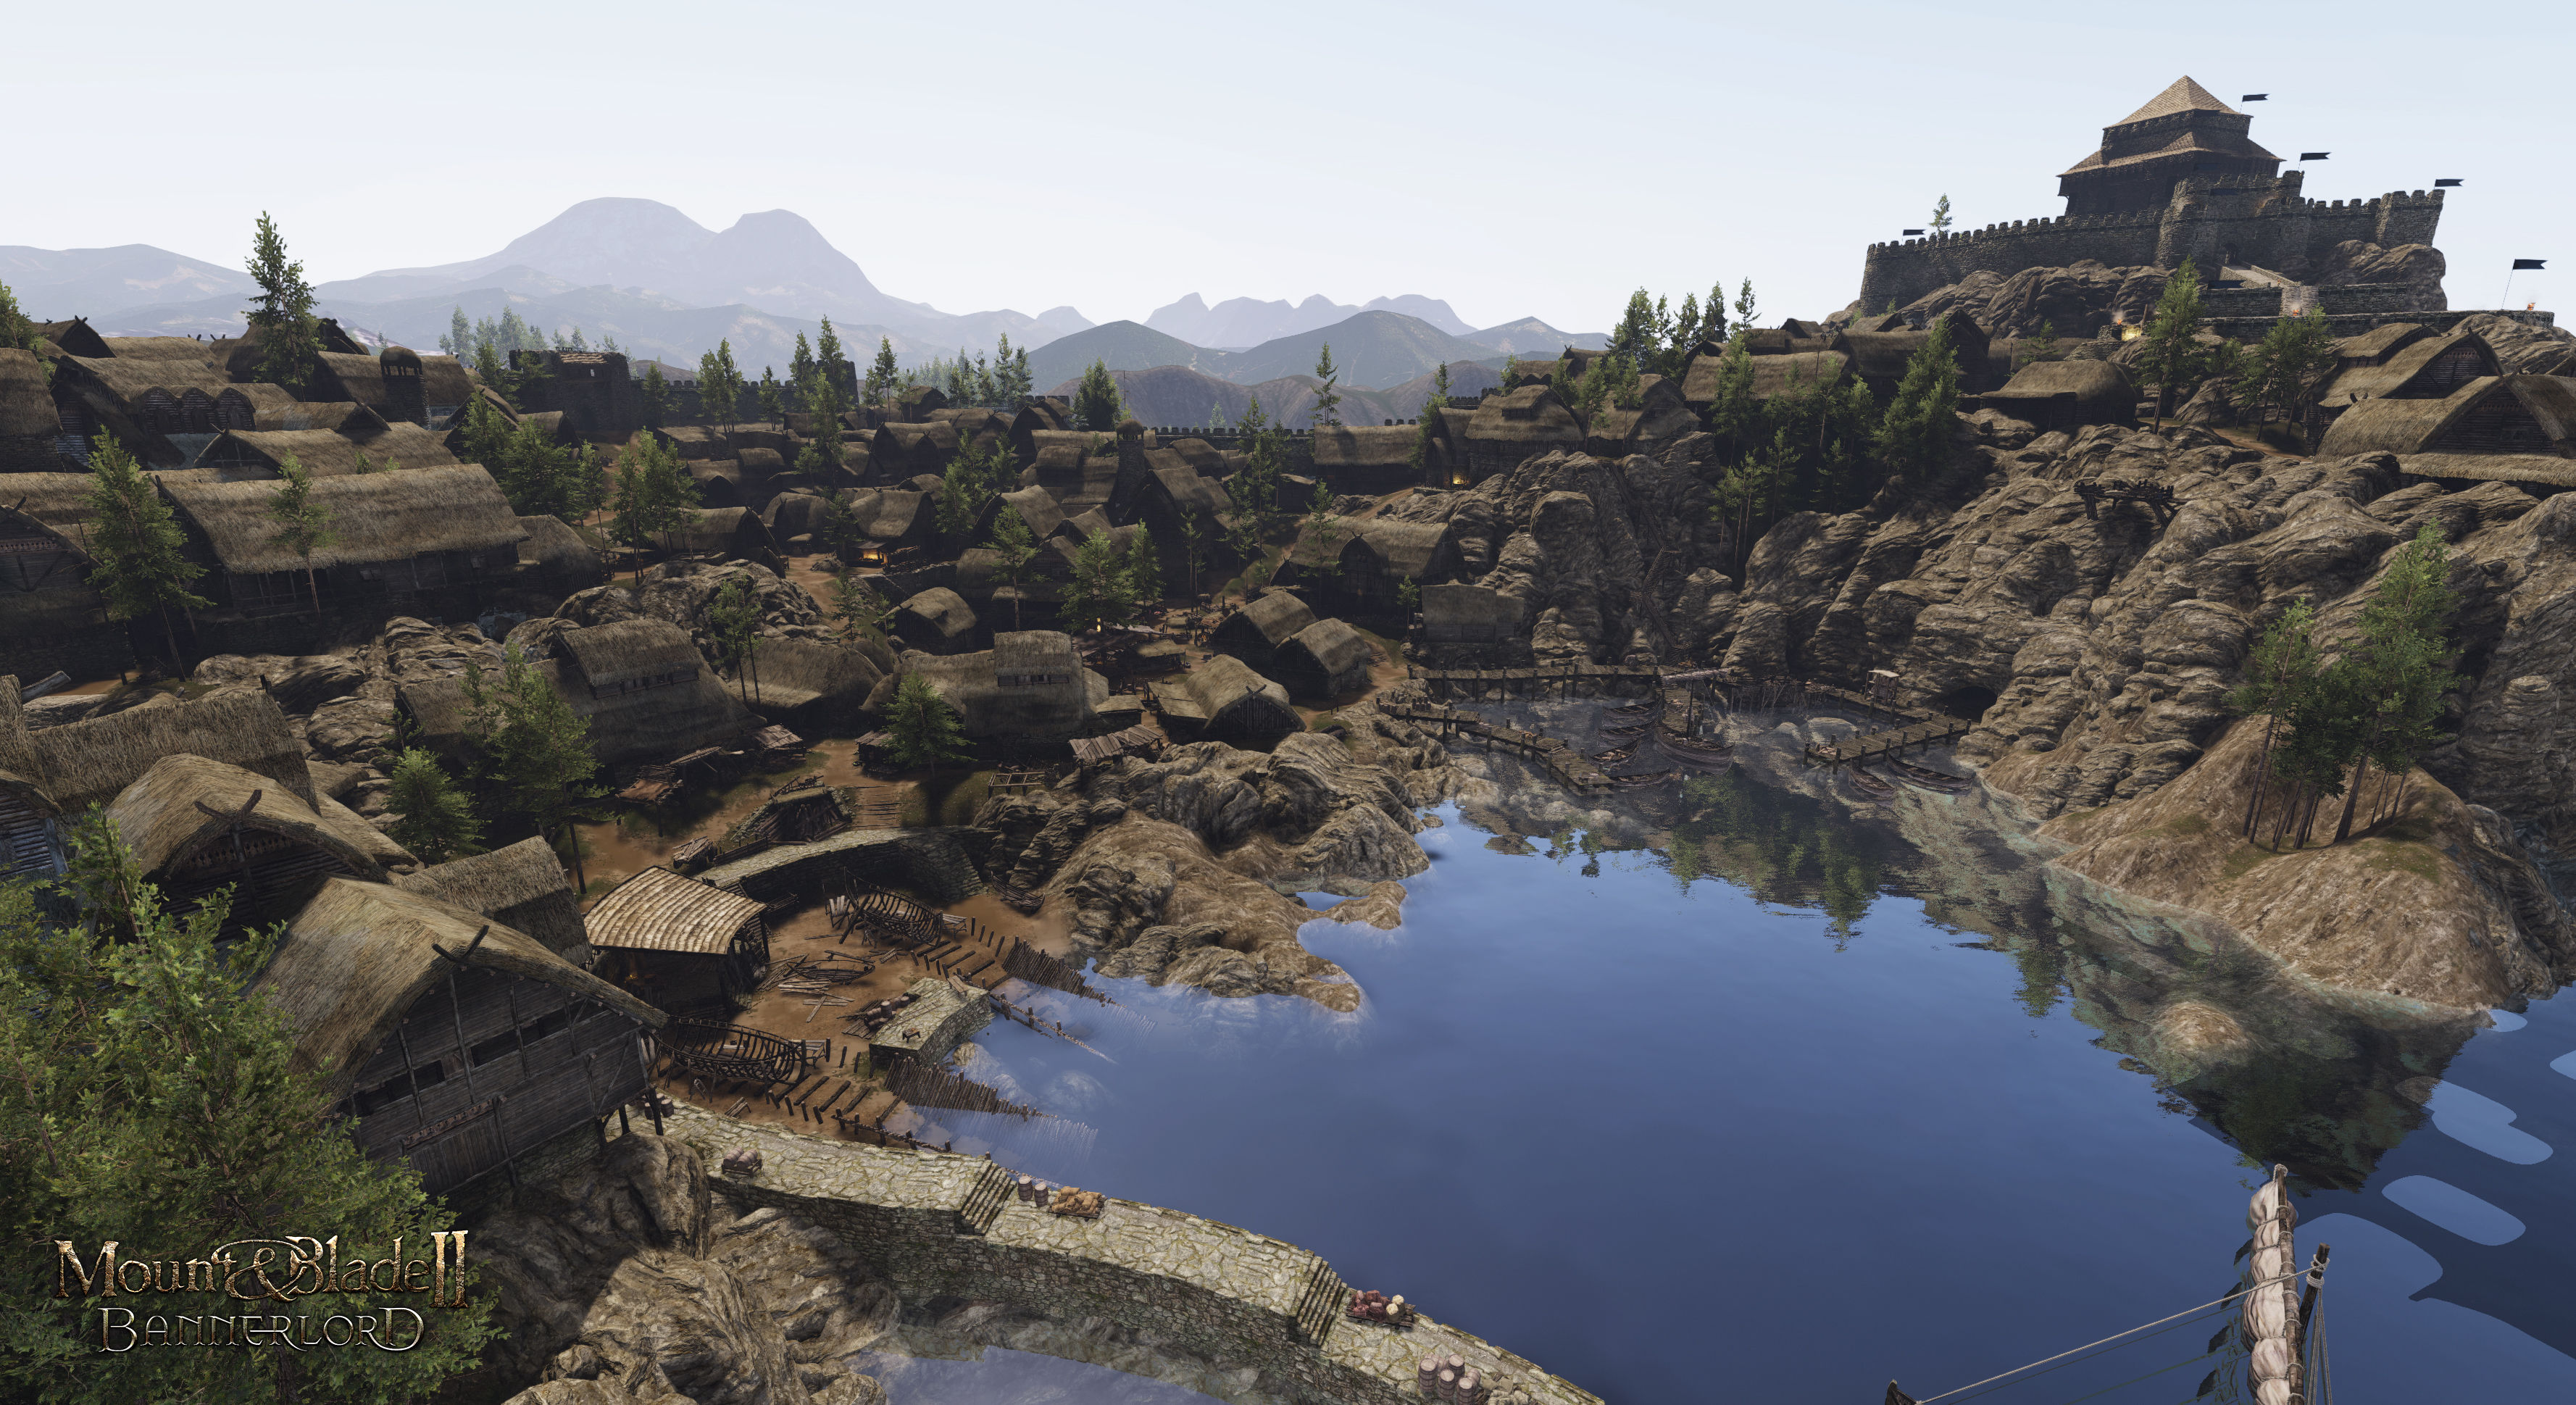 Mount & Blade II: Bannerlord'dan yeni ekran görüntüleri geldi